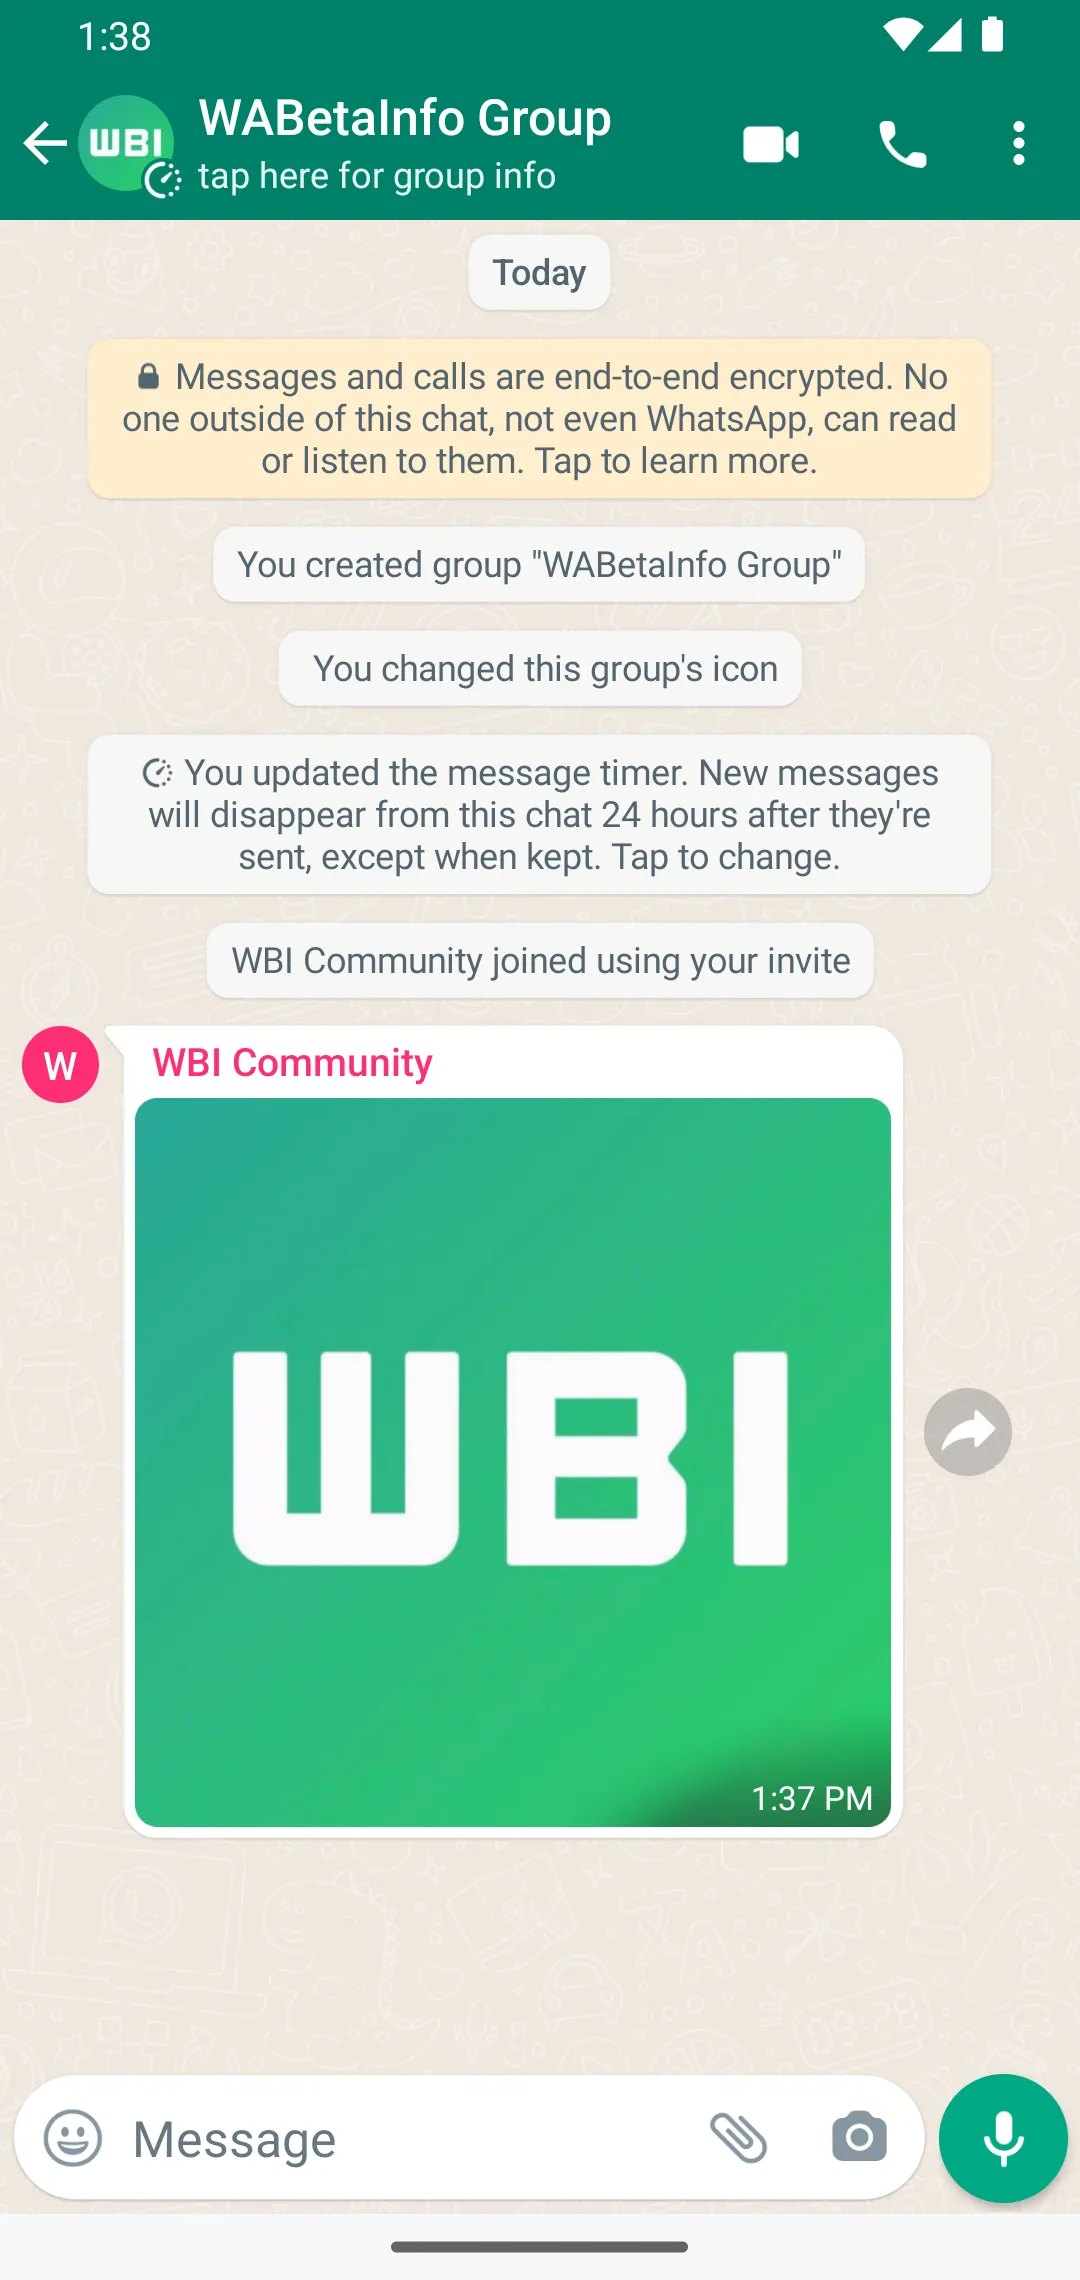 whatsapp profile avatars on group chats 2